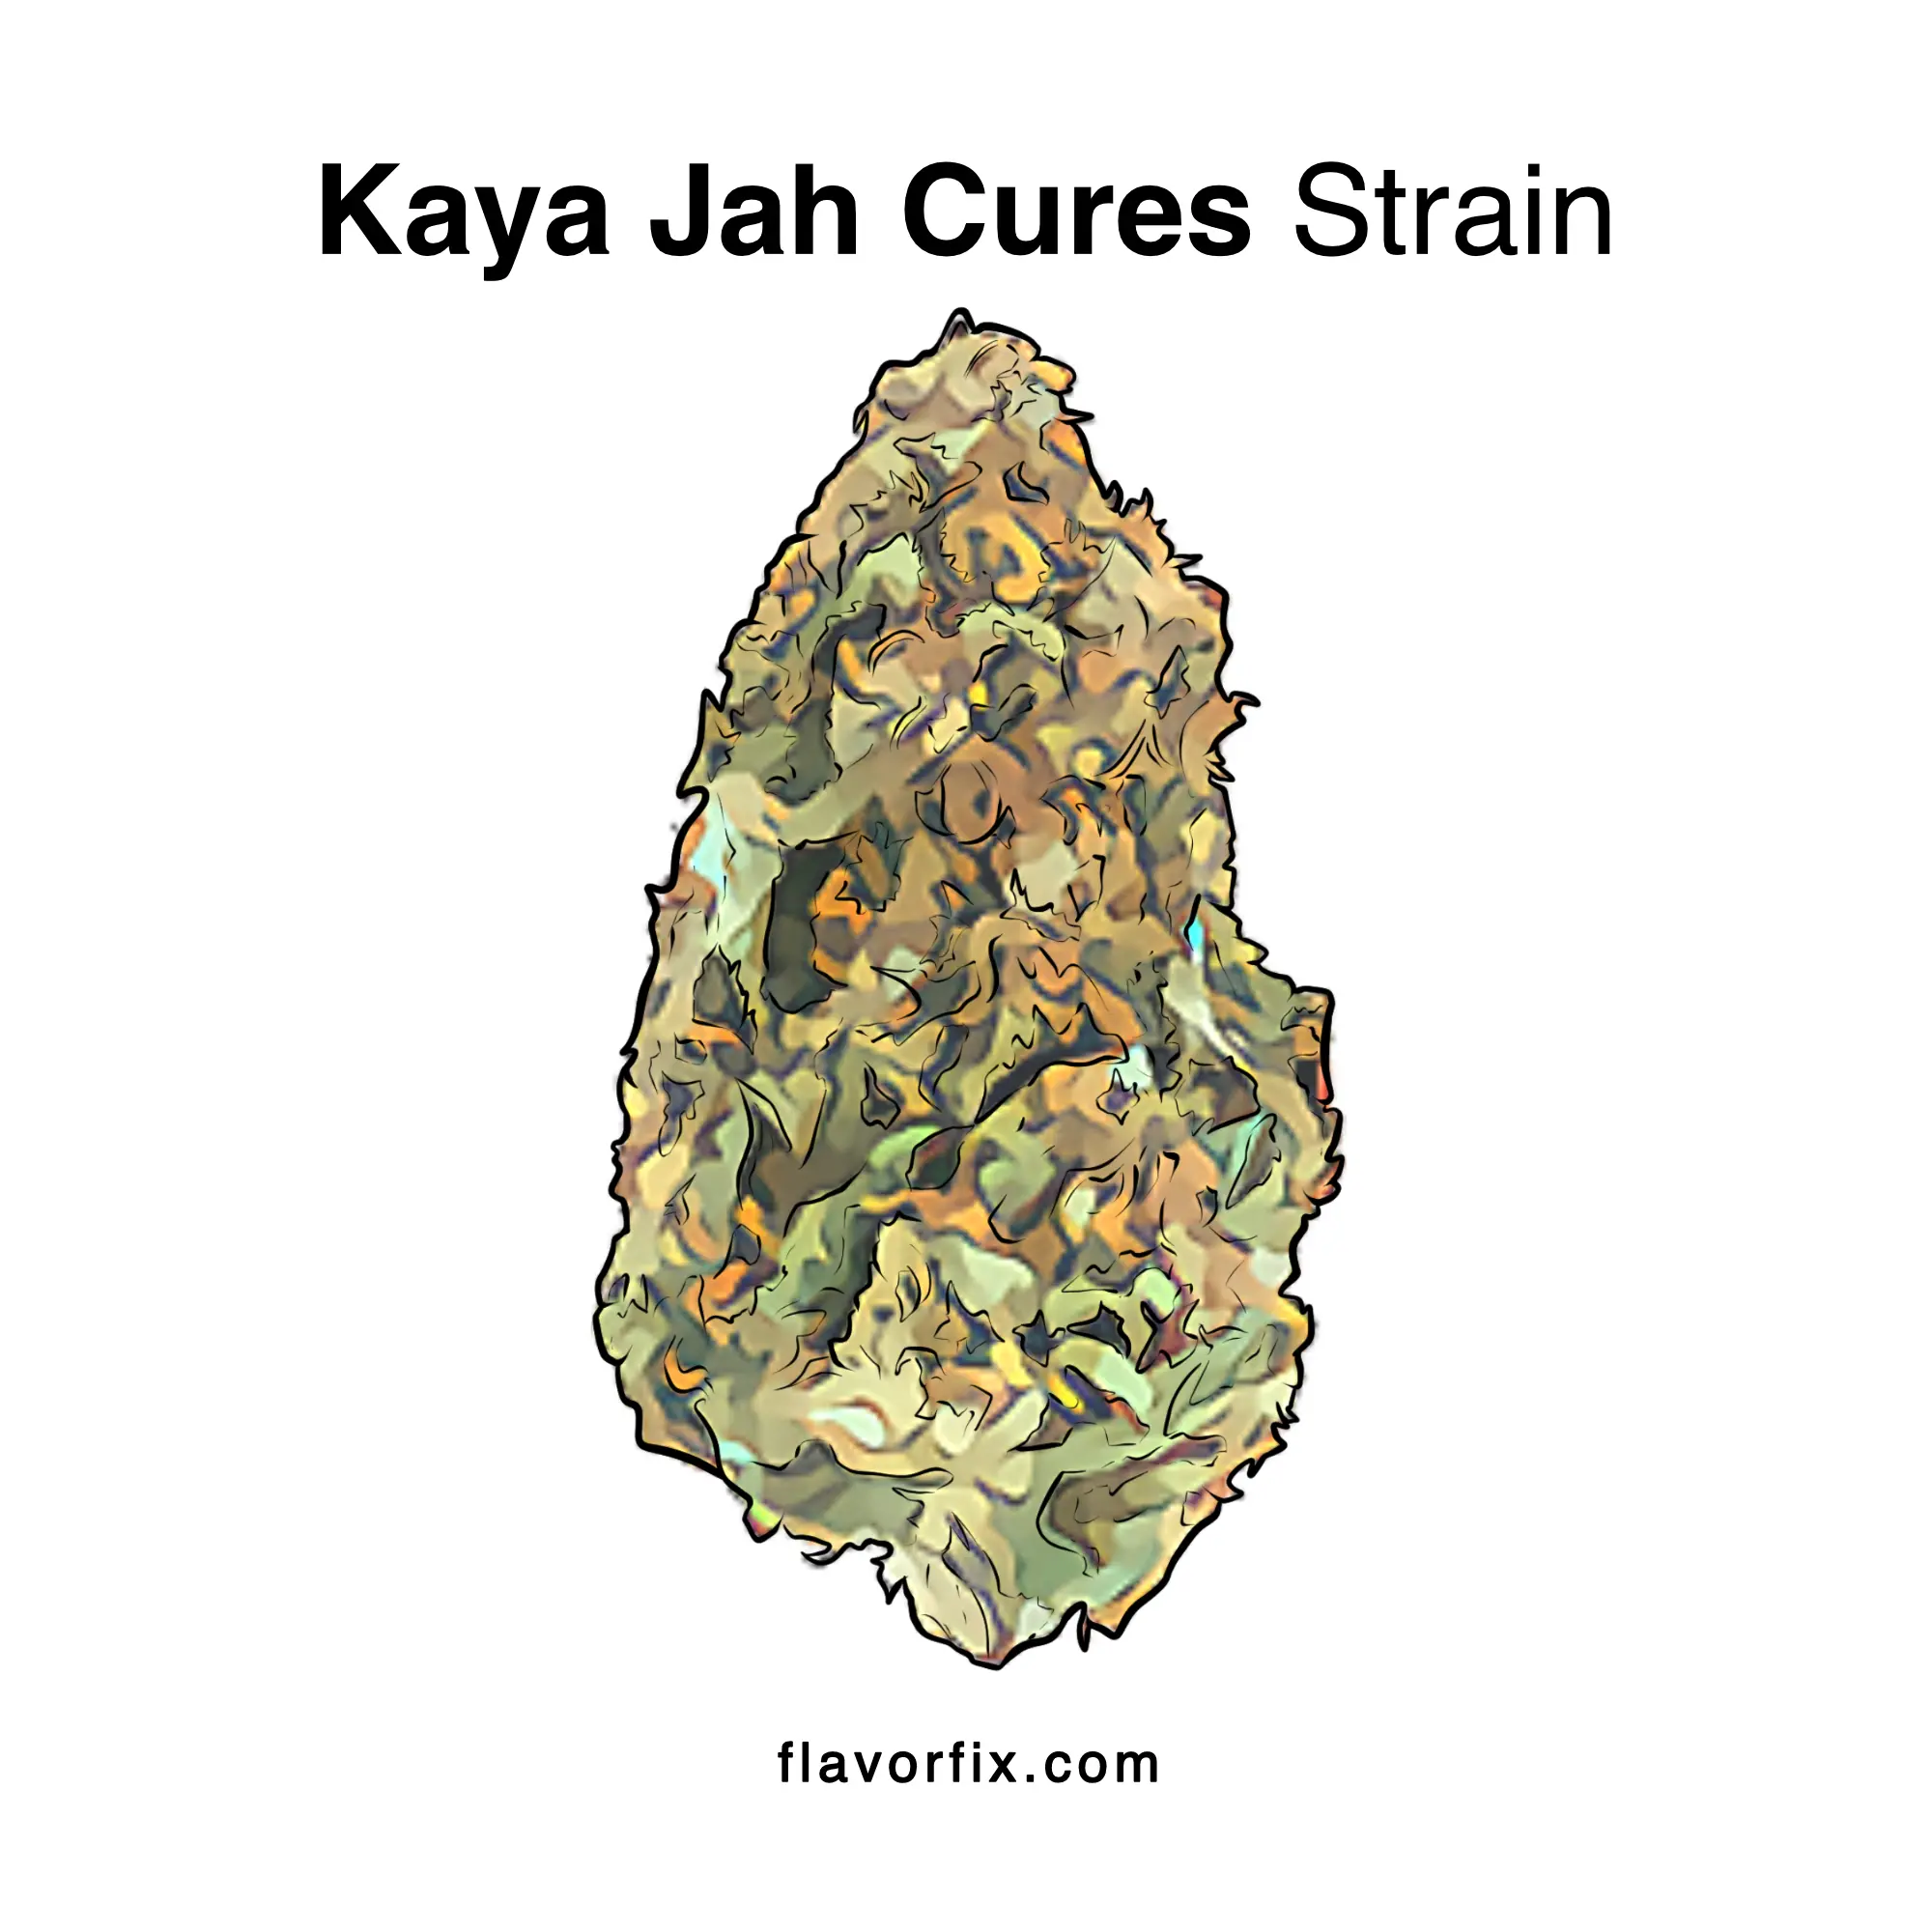 Kaya Jah Cures Strain